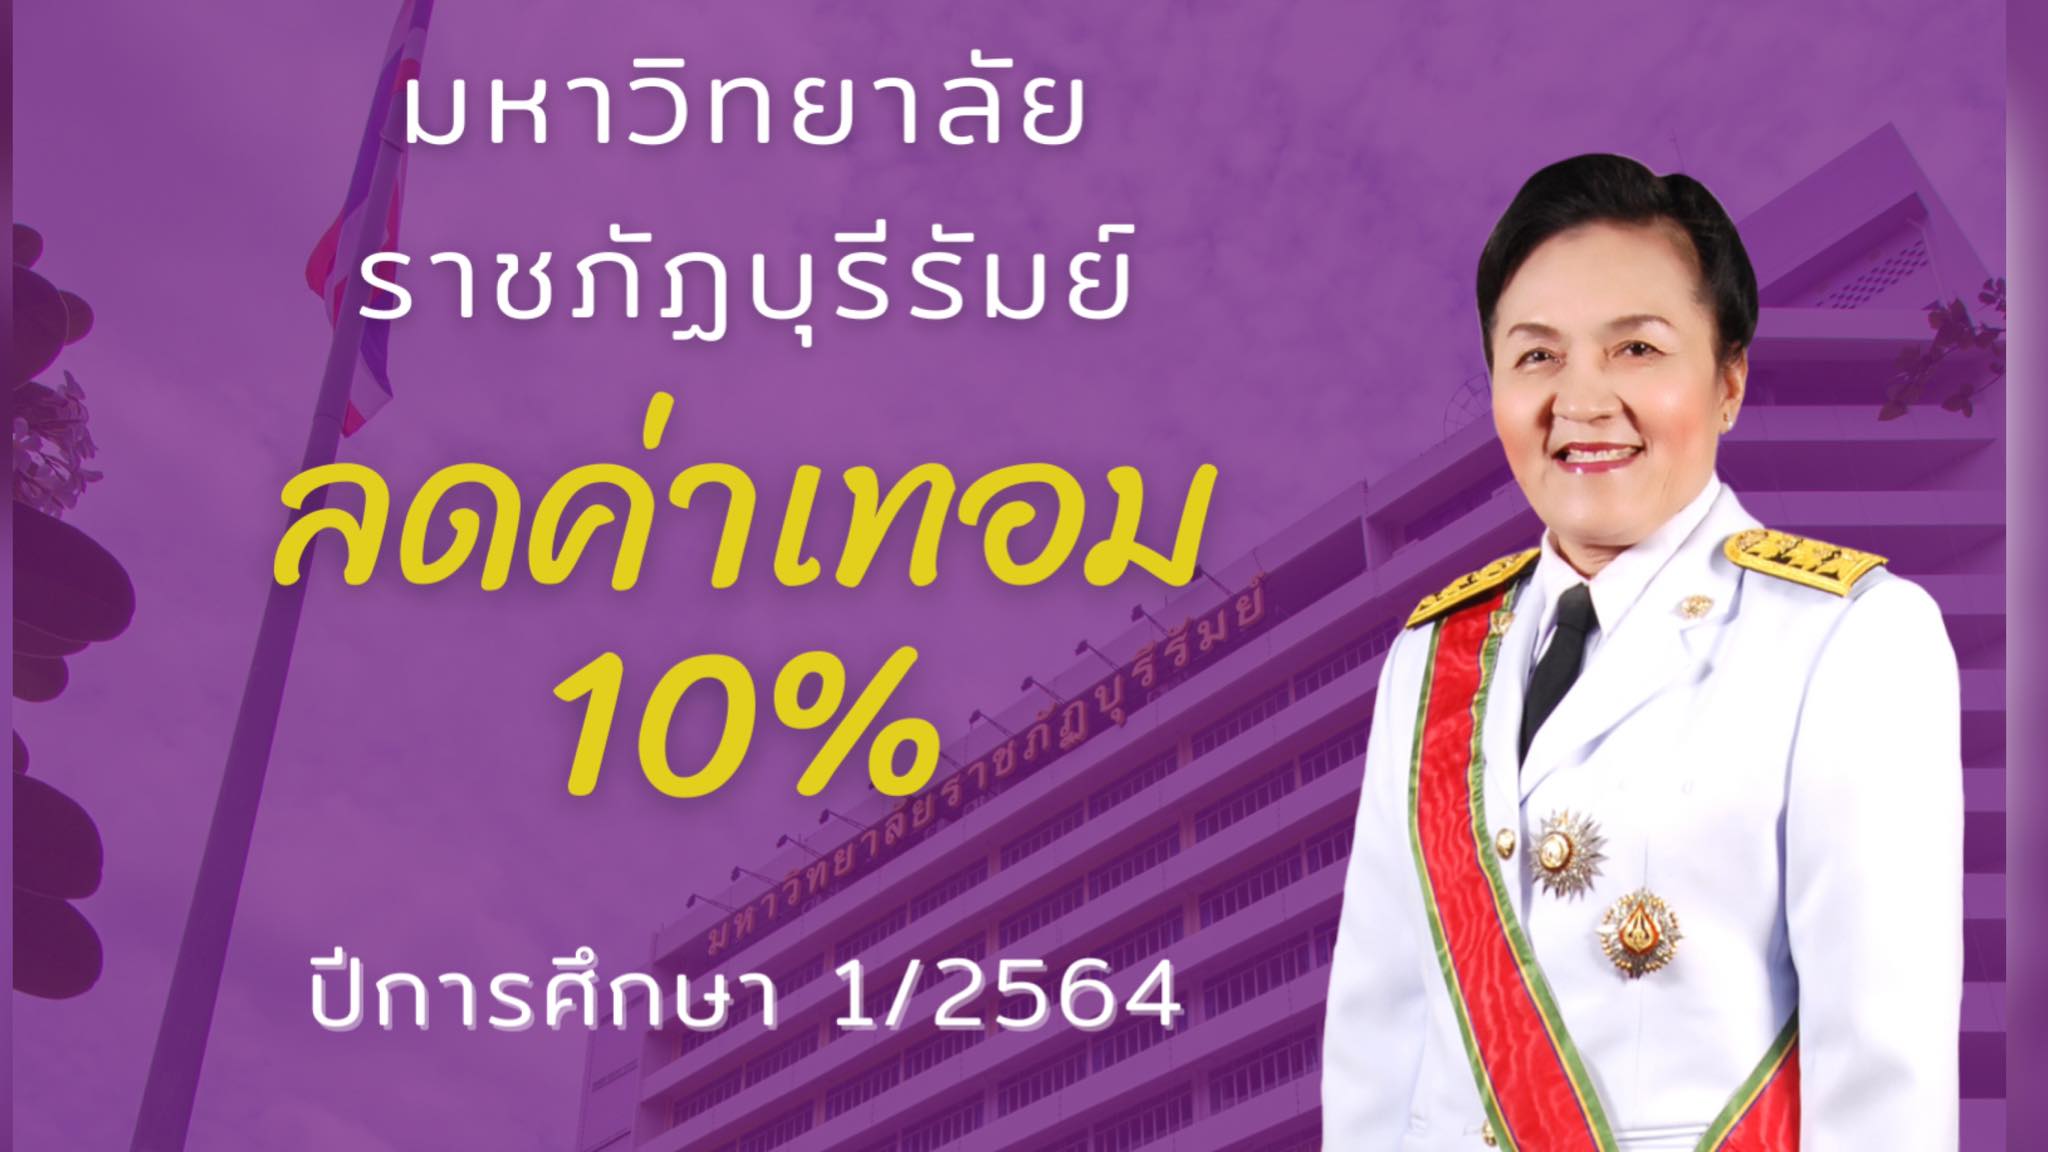 ลดค่าเทอม 10% มหาวิทยาลัยราชภัฏบุรีรัมย์